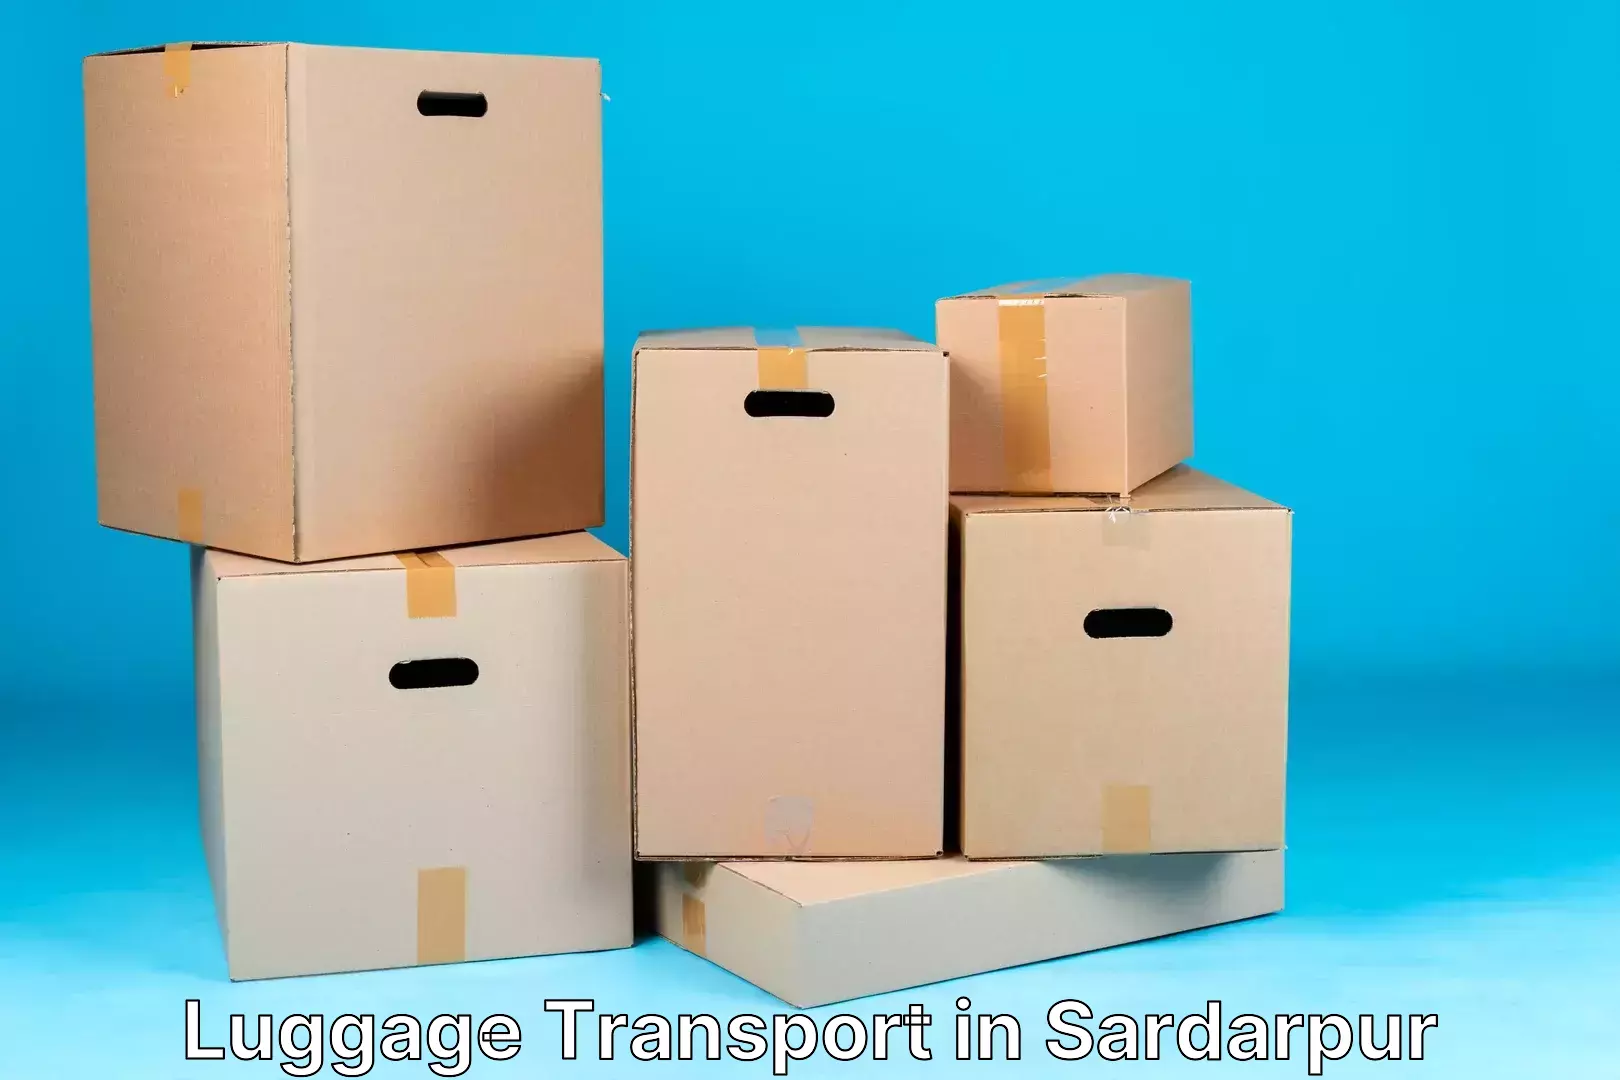 Luggage transit service in Sardarpur